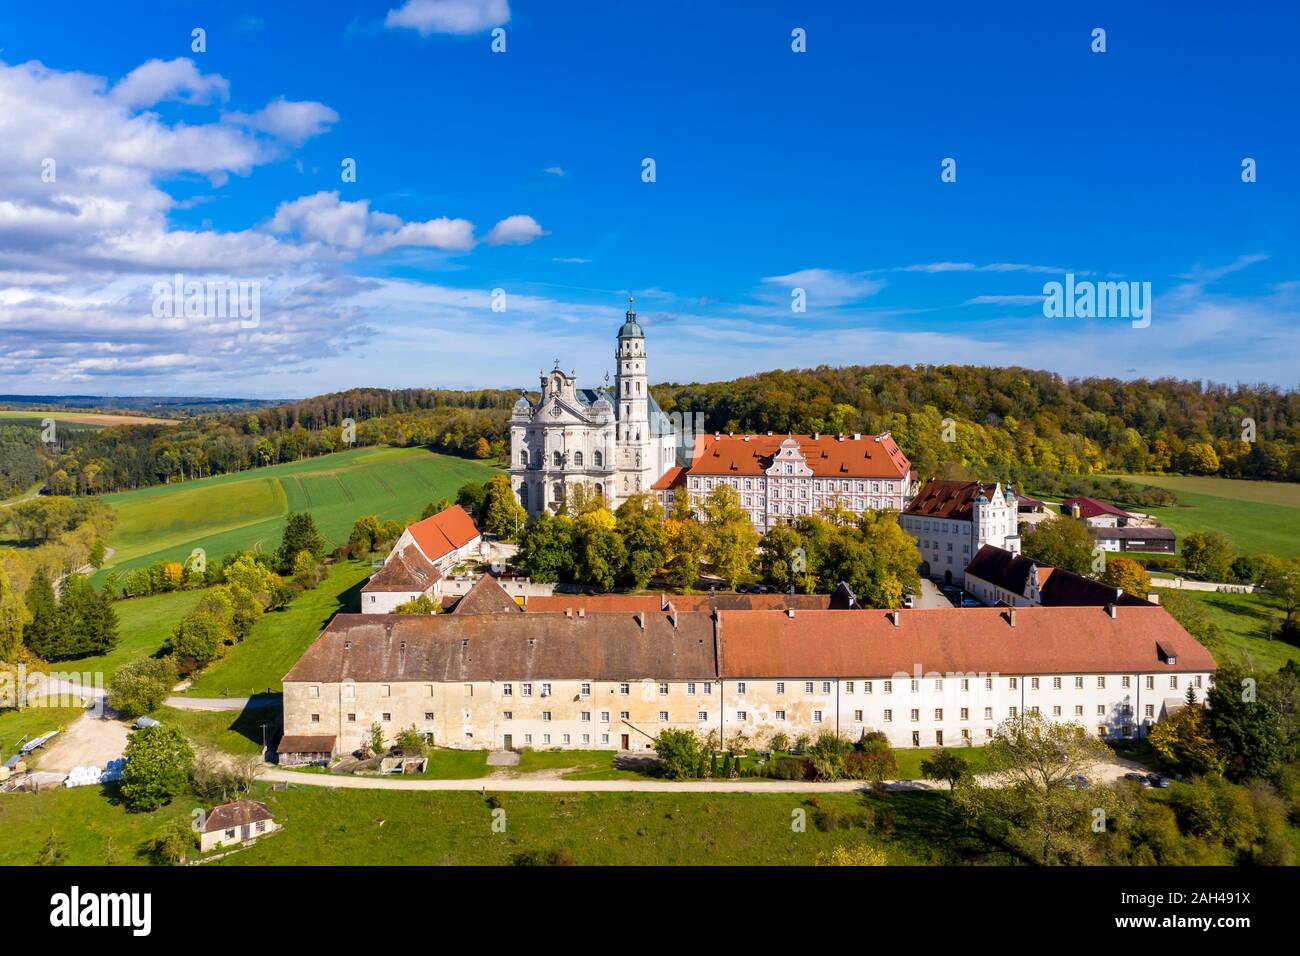 Germany, Baden-Wuerttemberg, Neresheim, Aerial view of Benedictine Monastery, Neresheim Abbey Stock Photo